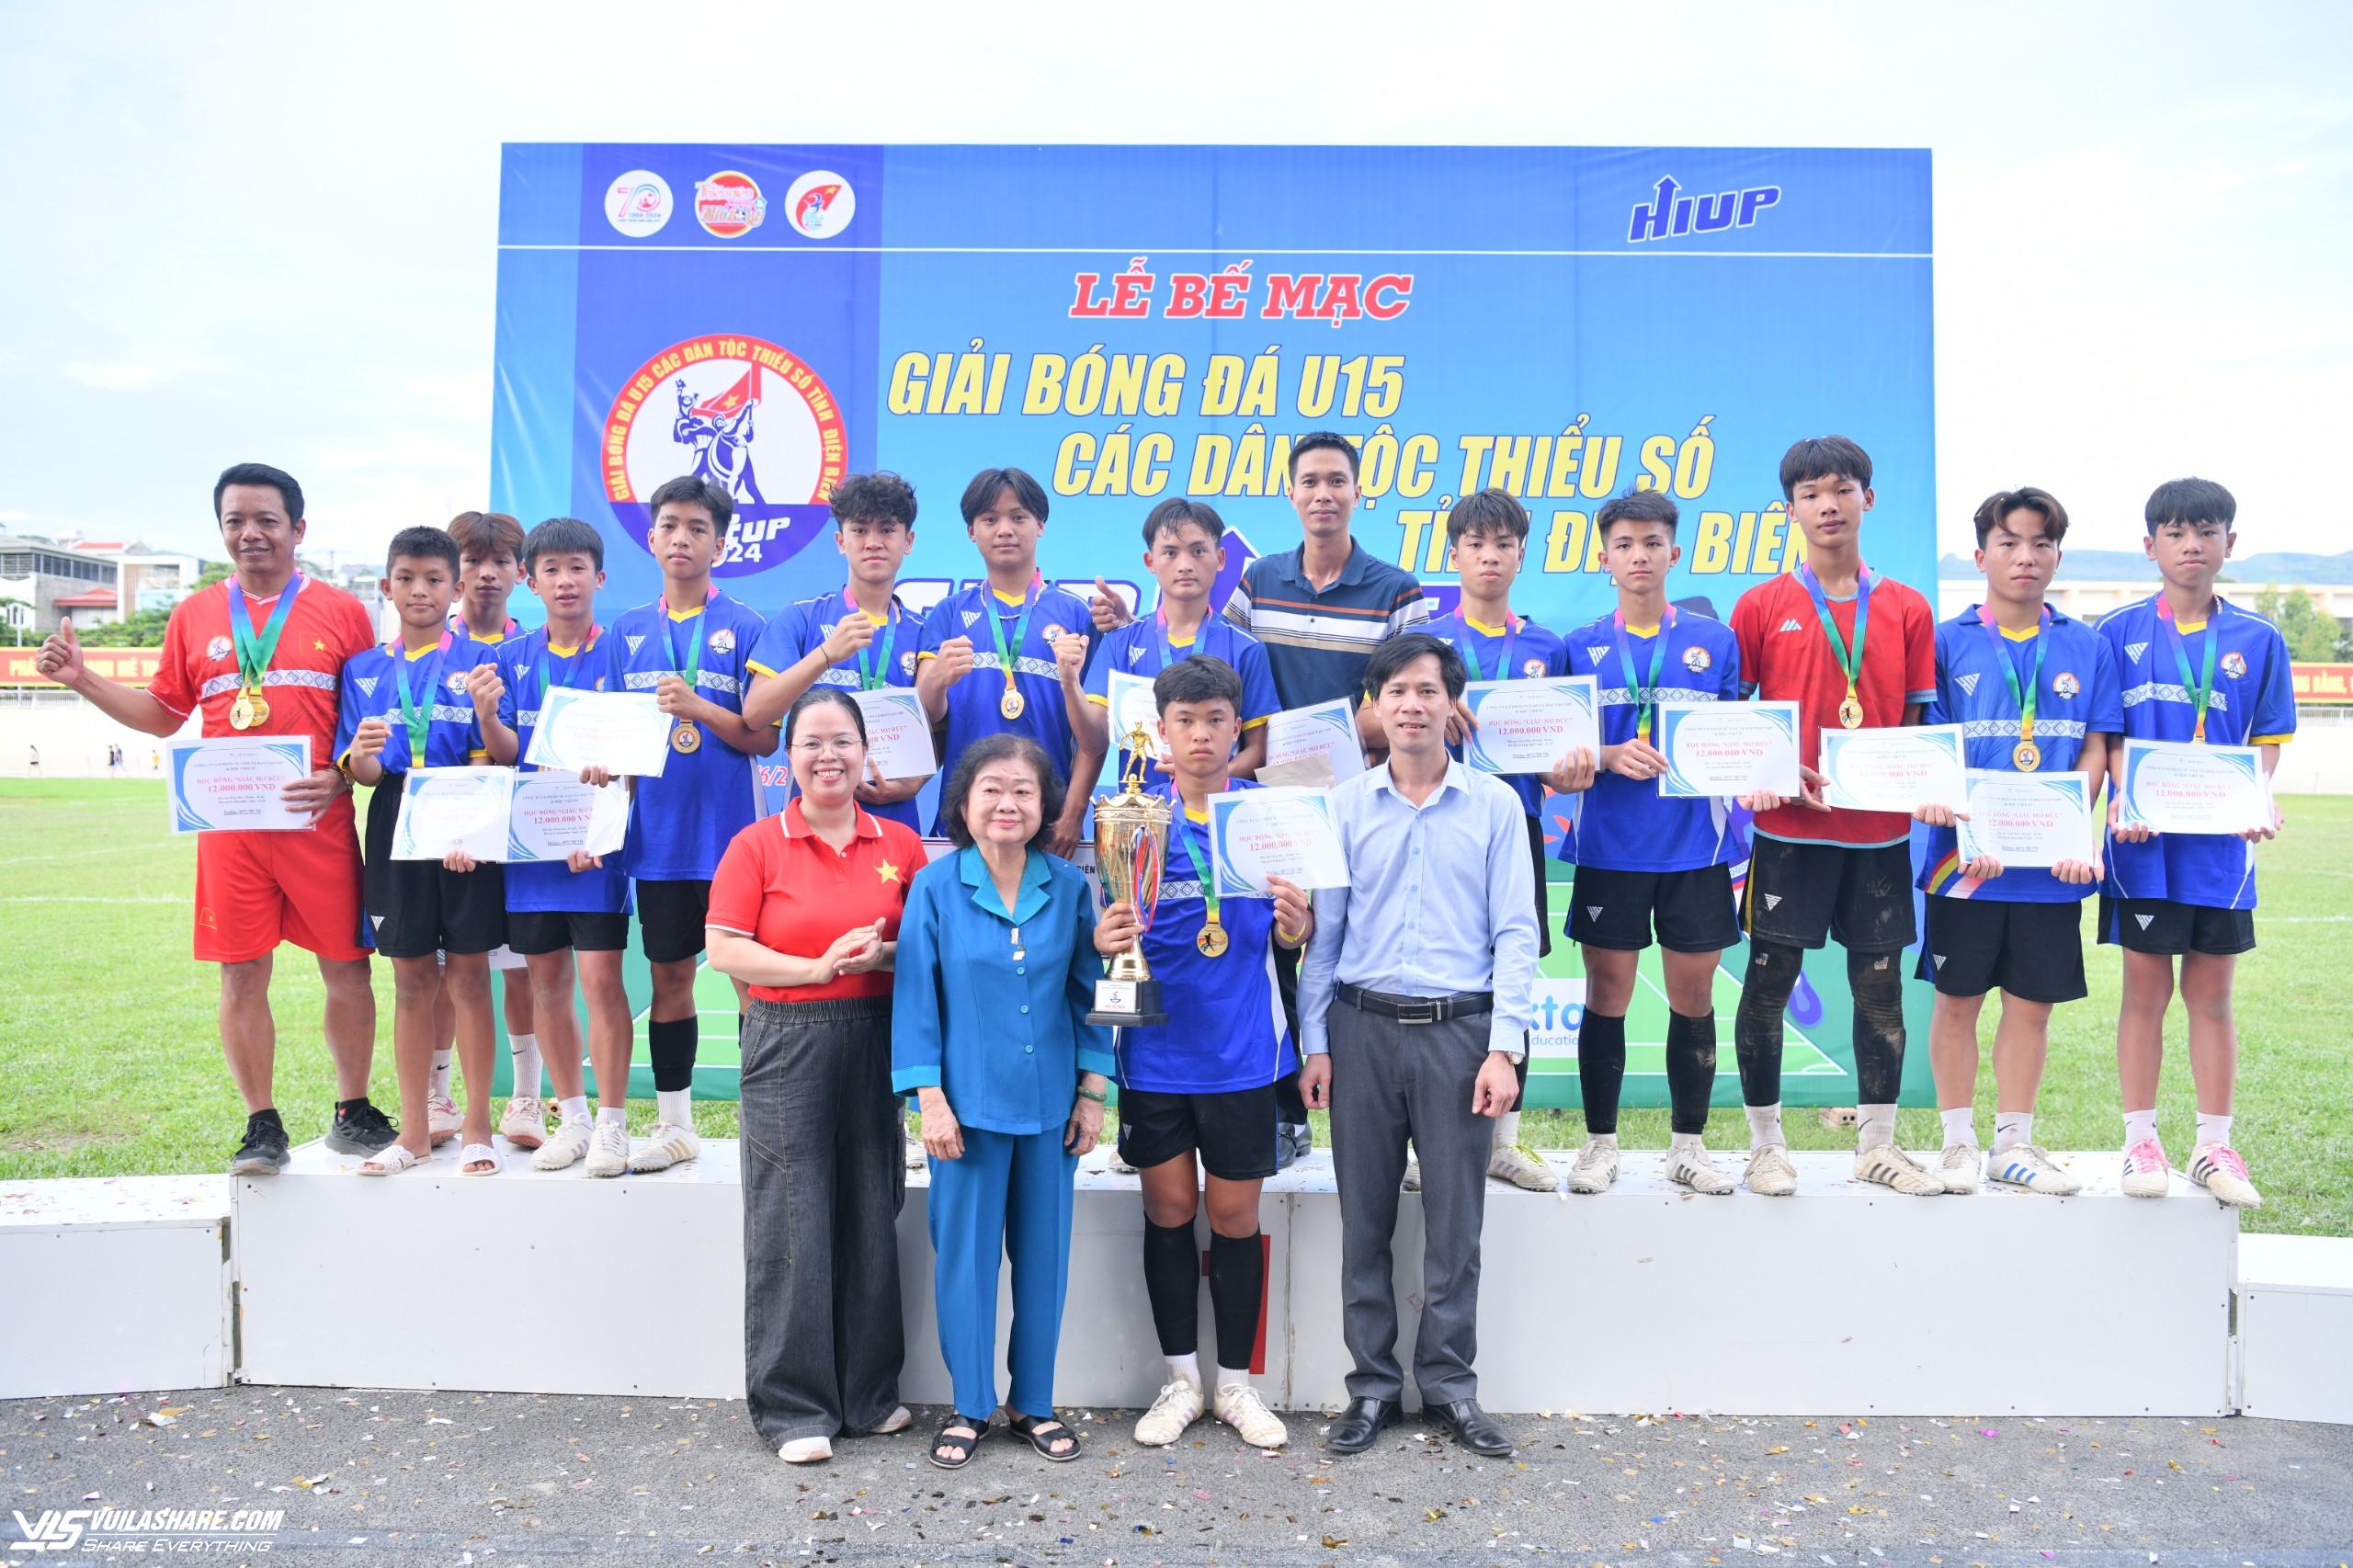 Nhiều hoạt động ý nghĩa tại giải bóng đá các dân tộc thiểu số tỉnh Điện Biên- Ảnh 2.